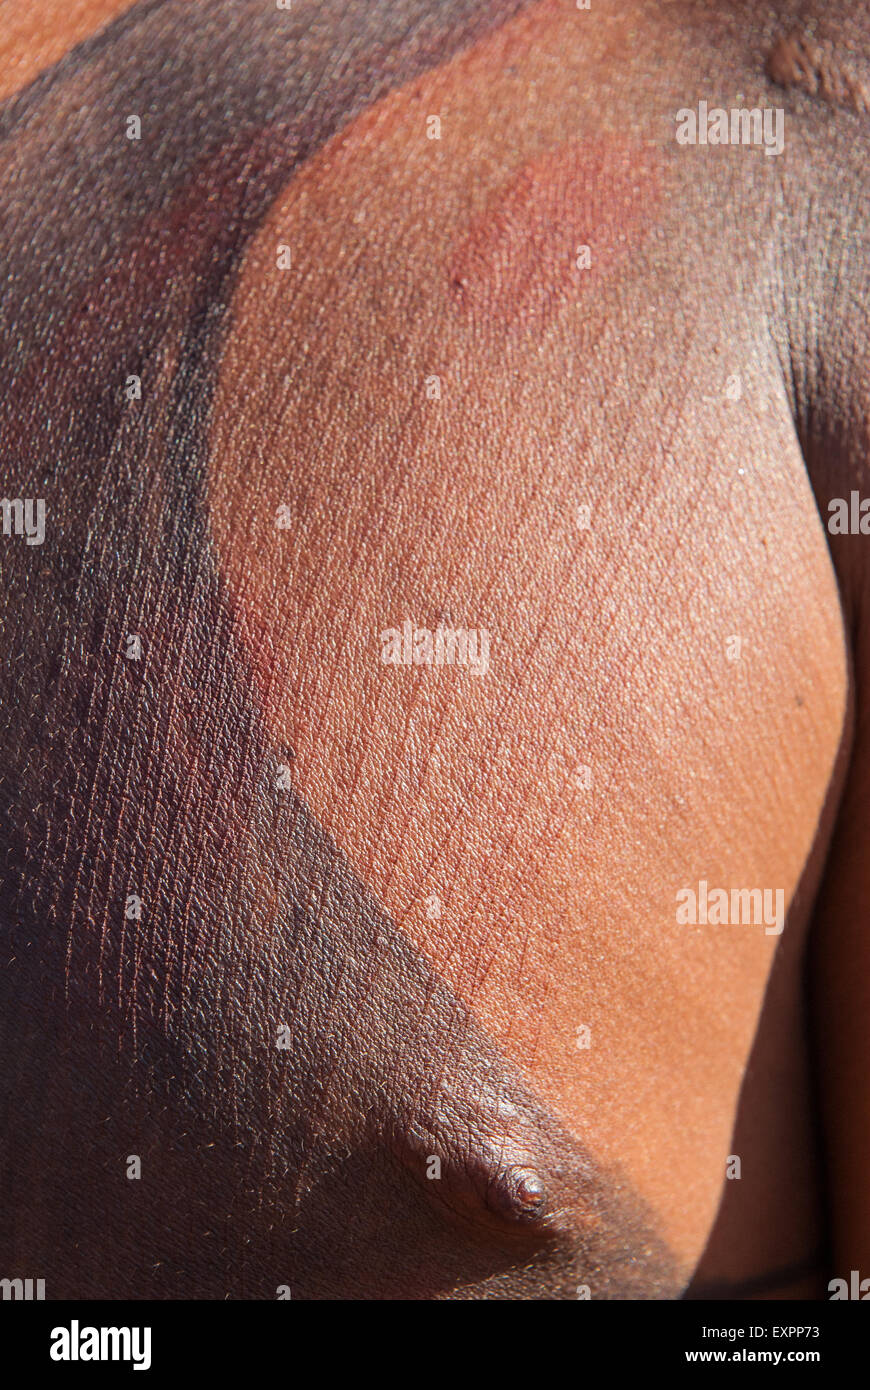 Xingu indigenen Park, Mato Grosso, Brasilien. Aldeia Matipu. Vorbereitung auf die Zeremonie Kuarup Genipapo Körperfarbe und eingeritzten Brust. Stockfoto